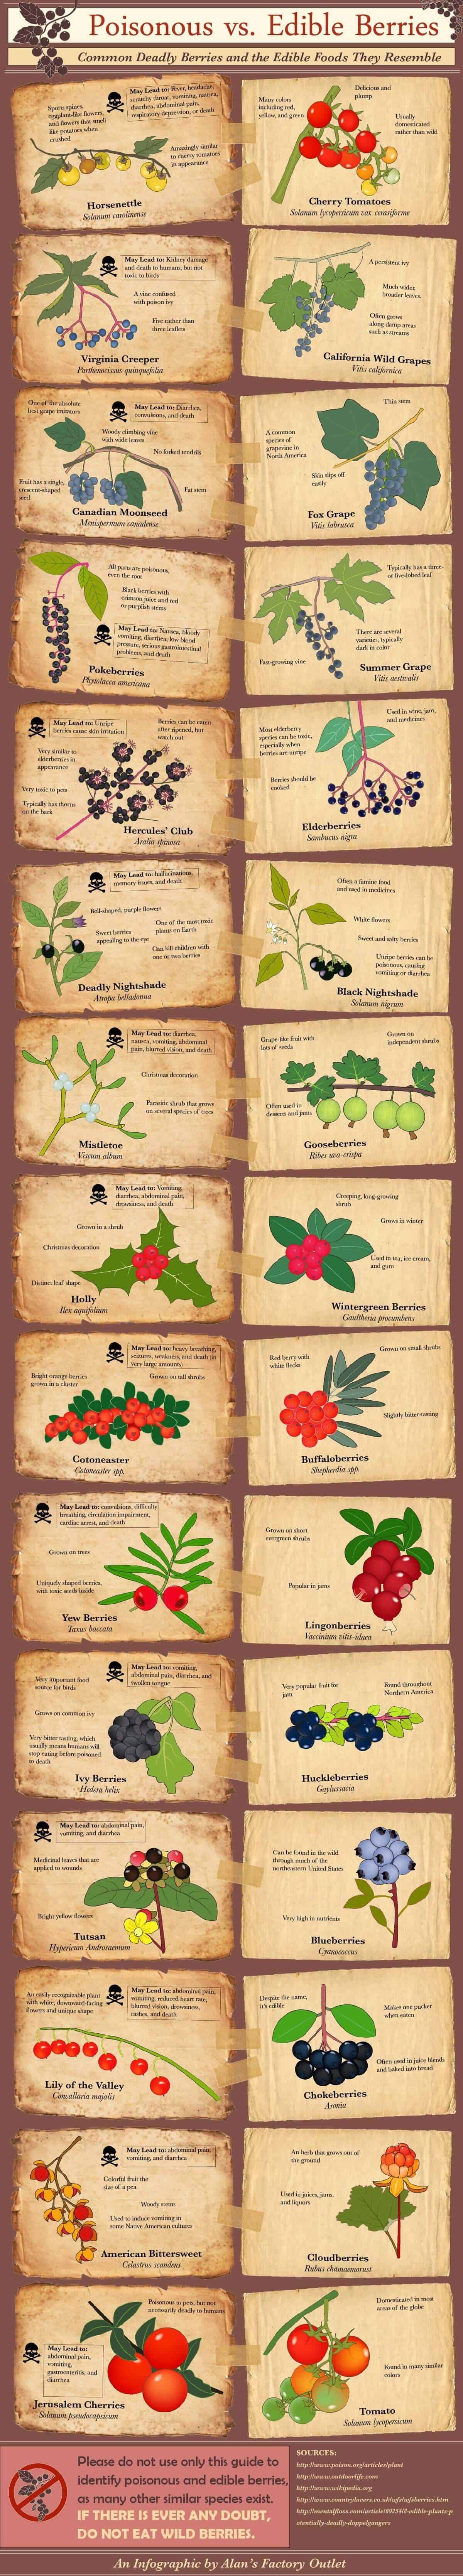 poisonous-vs-edible-berries-6.jpg